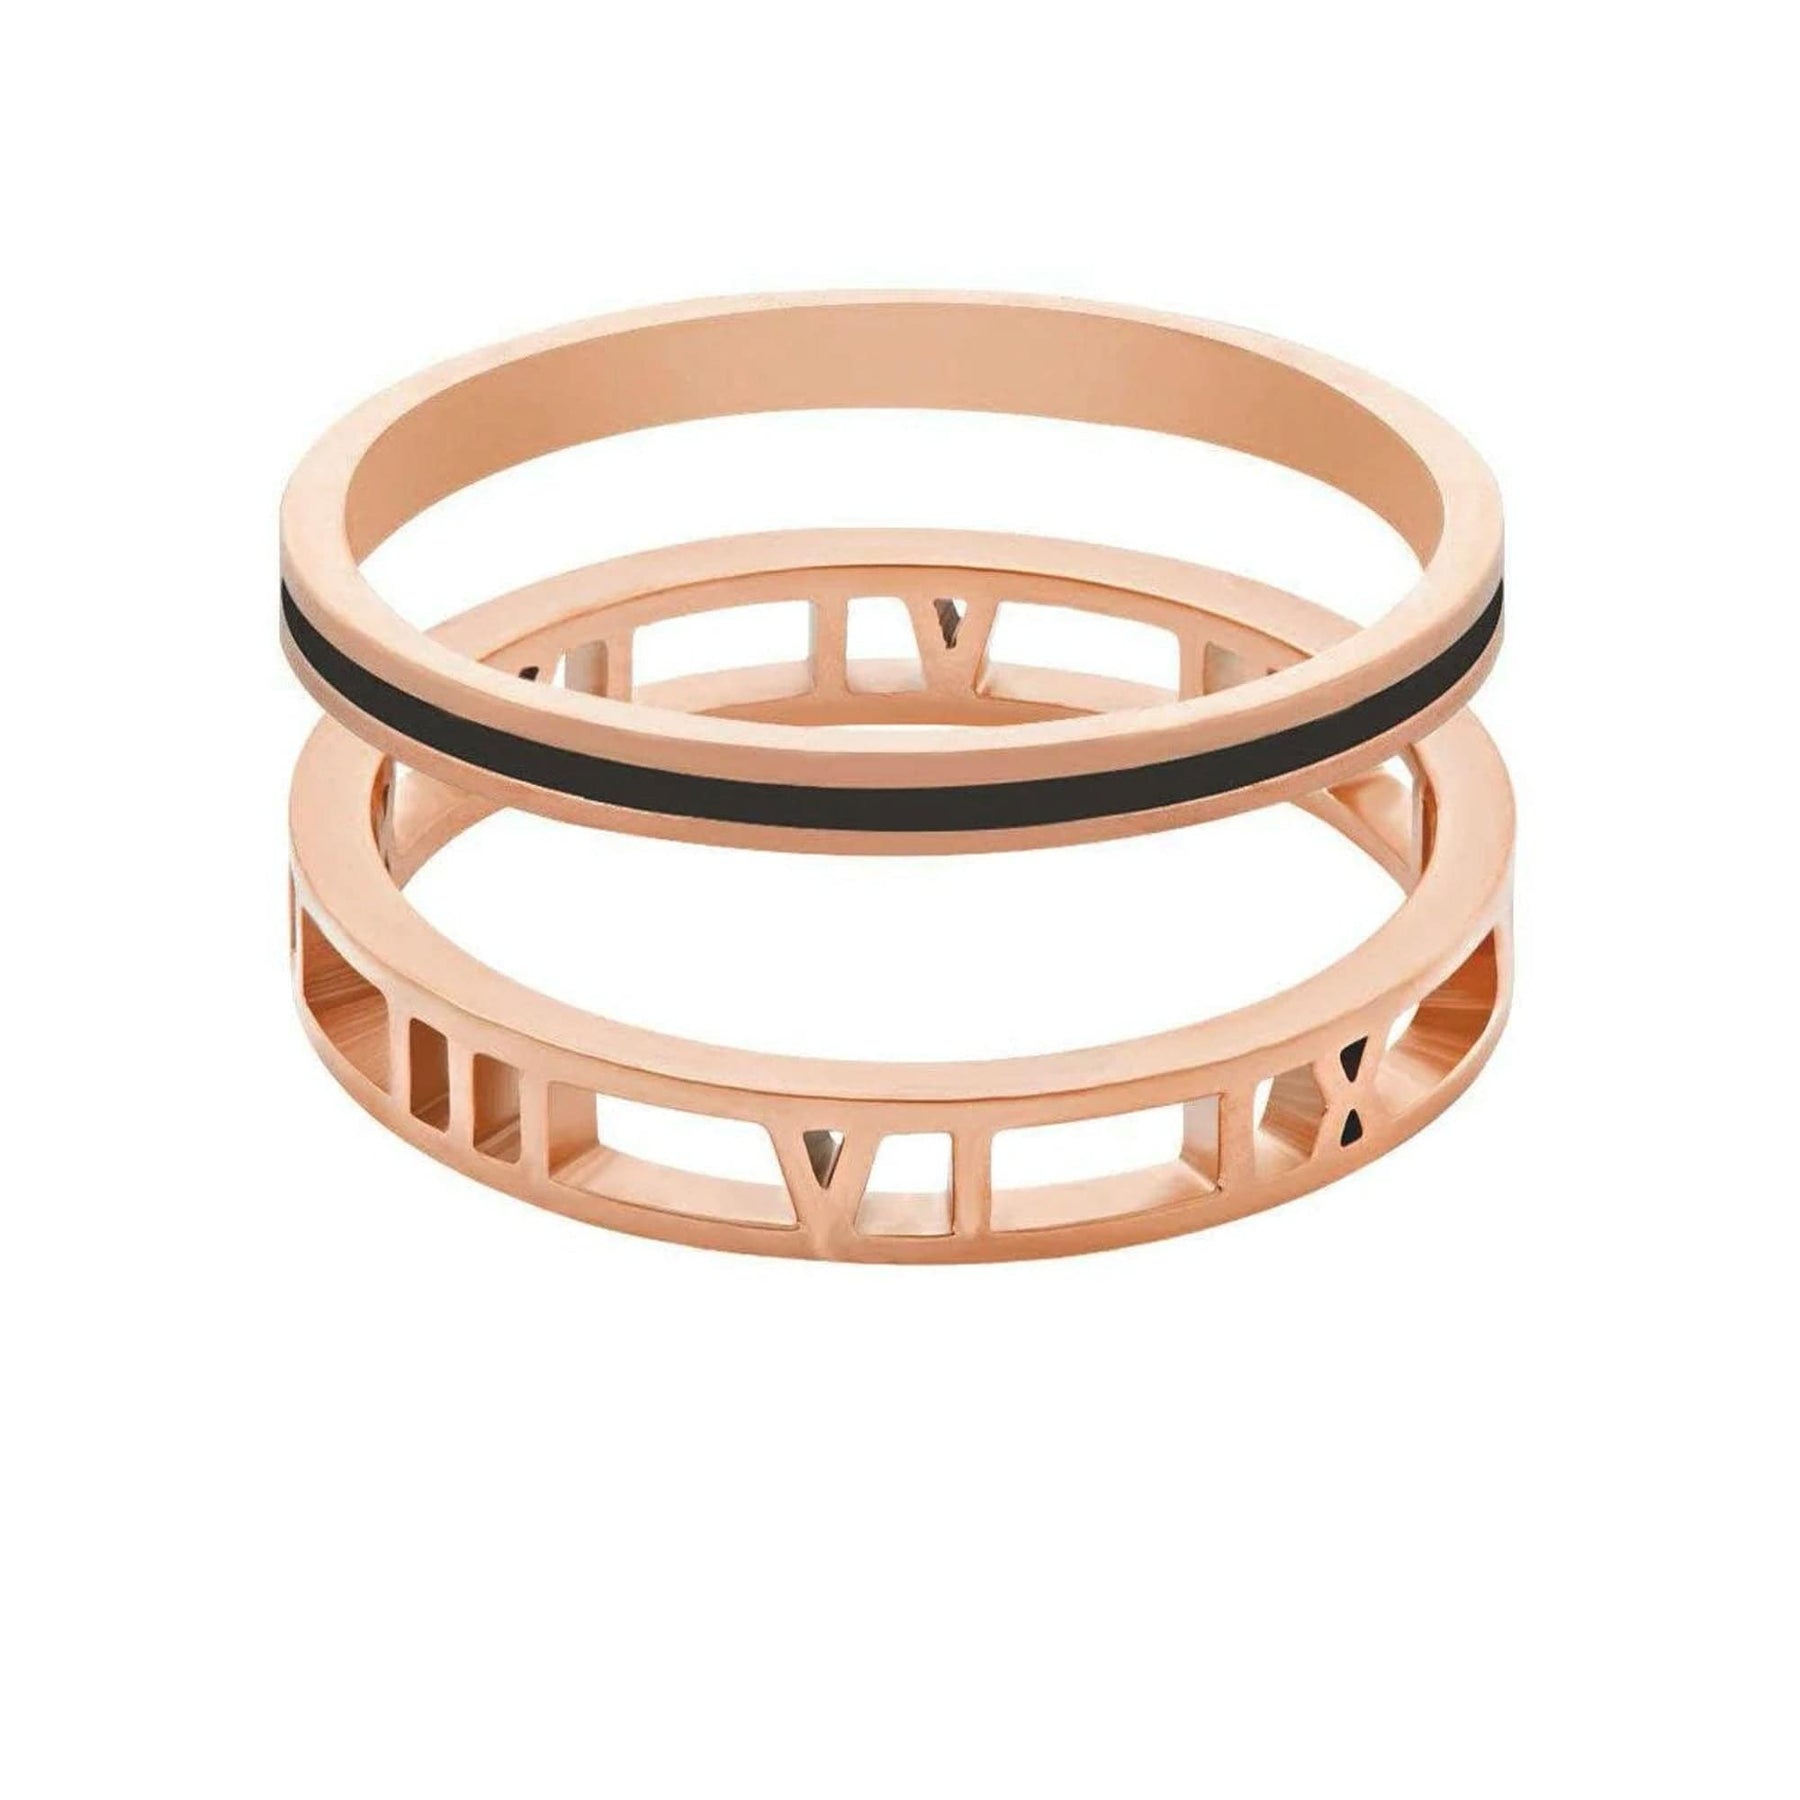 BohoMoon Stainless Steel Madison Ring Pair Rose Gold / US 9 / UK S / EUR 60 (x large)